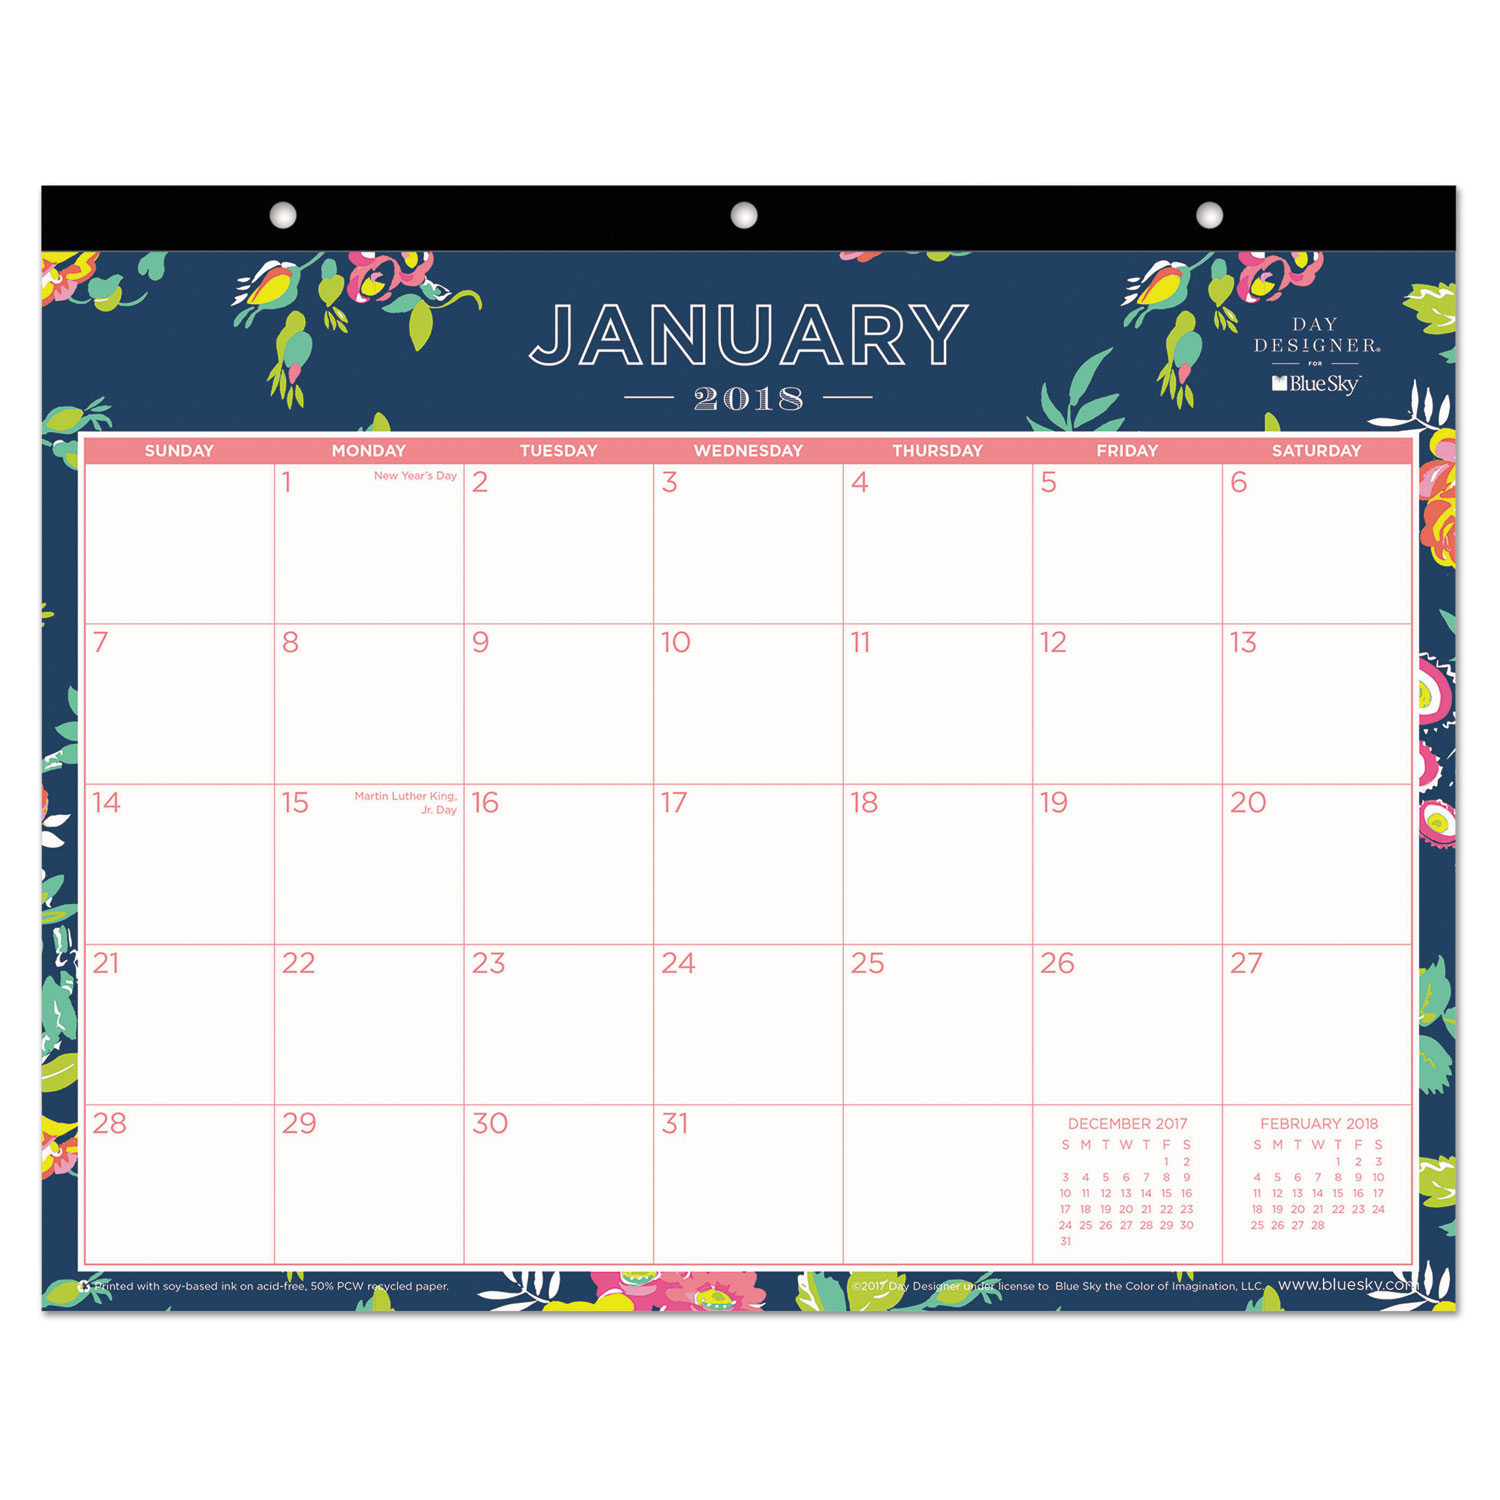 Day Designer Tablet Calendar, 11 x 8 3/4, Navy Floral, 2018